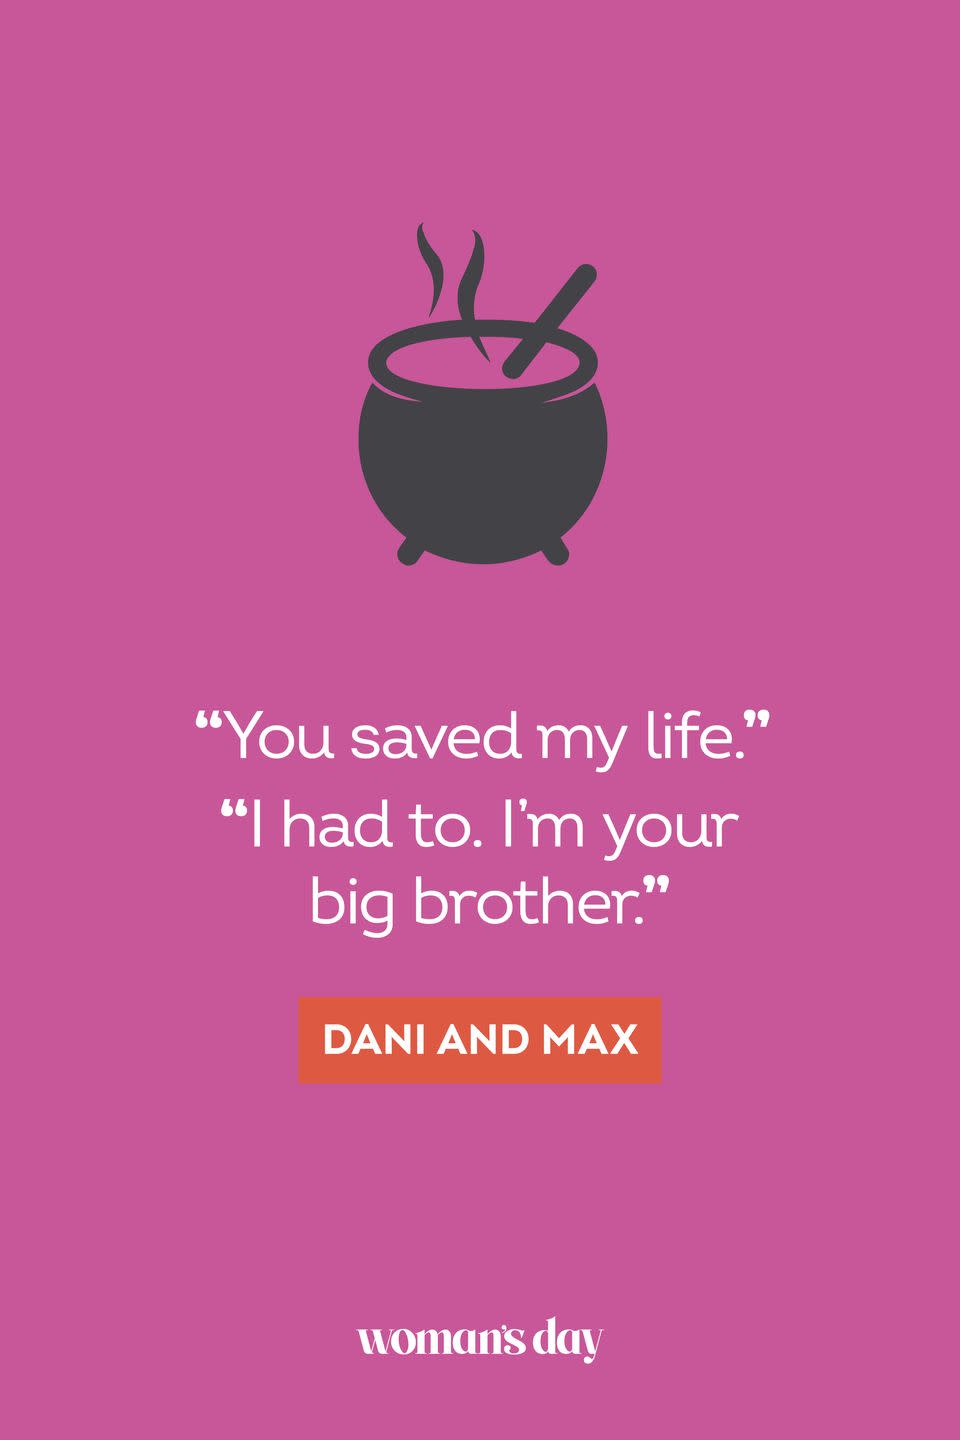 <p>“You saved my life.”</p><p>“I had to. I’m your big brother.” — Dani and Max</p>